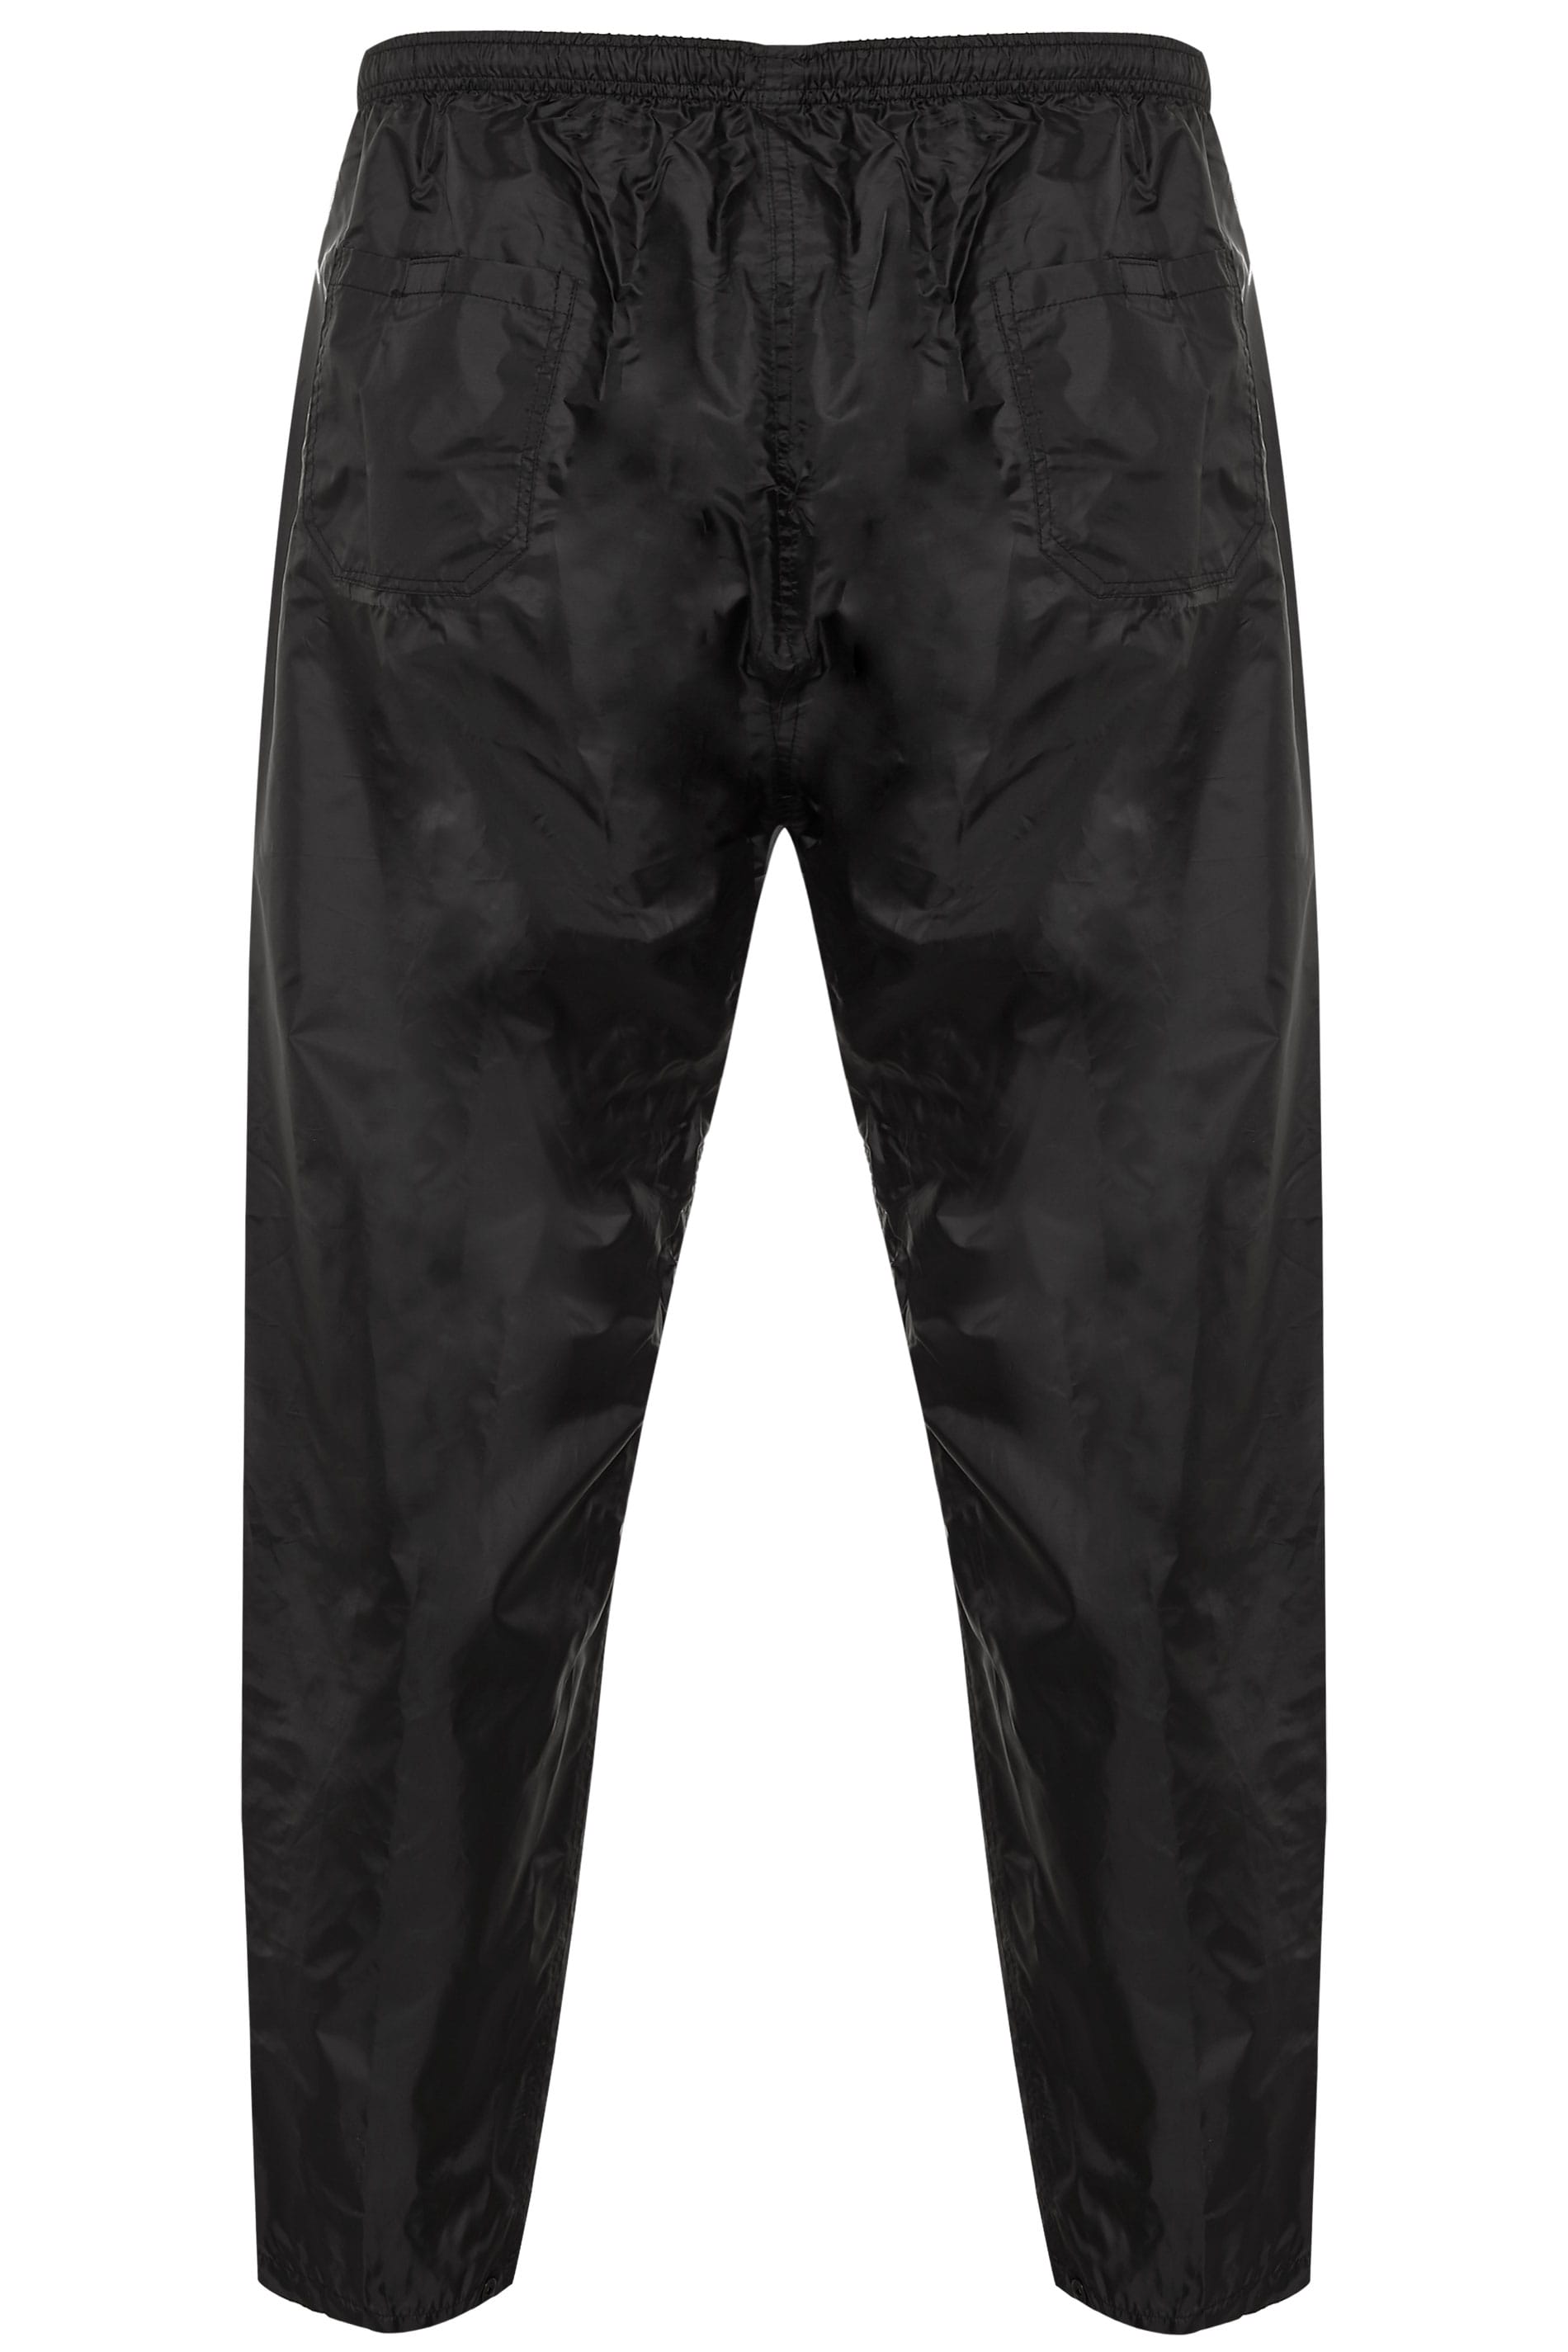 D555 Black Foldaway Waterproof Trousers | BadRhino 1